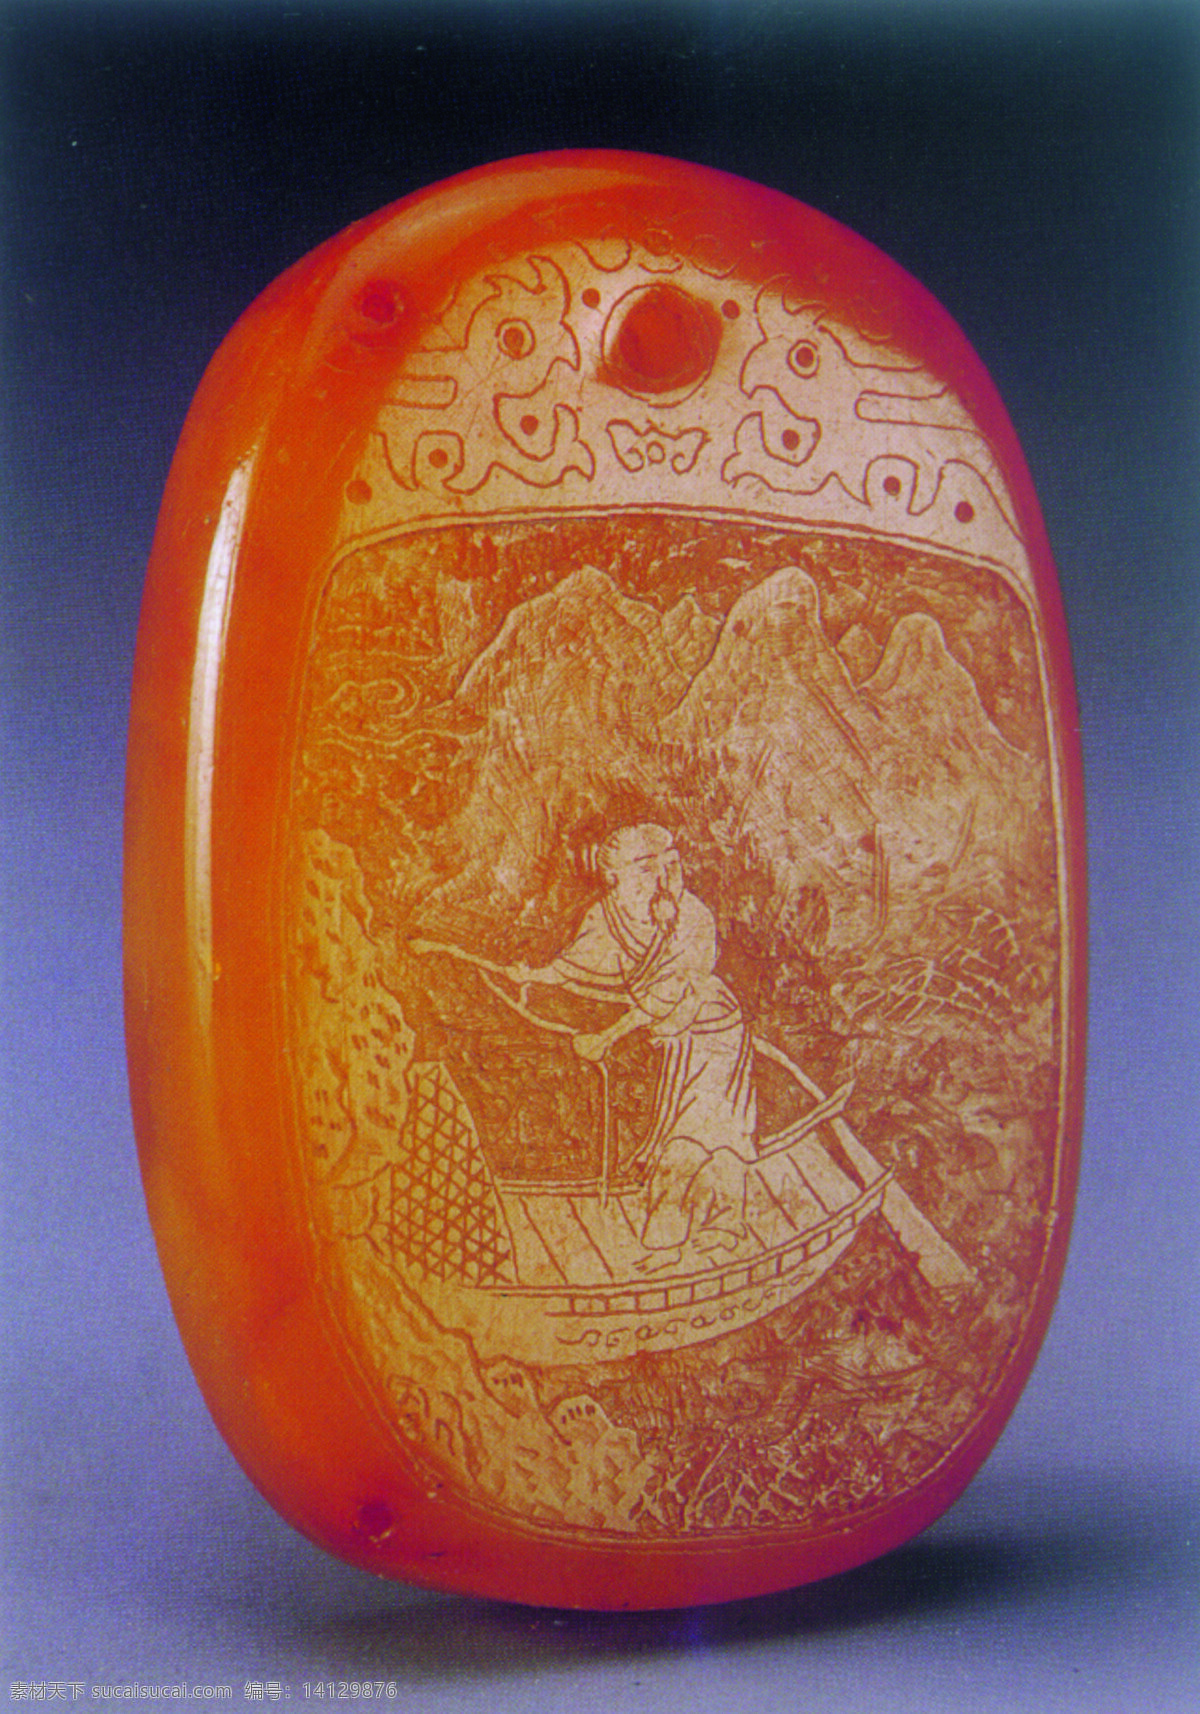 工艺品 雕刻 雕塑 古董 琥珀 玛瑙 石器 手工艺术品 玉佩 玉石 中国风 中国文化 中华艺术绘画 装饰素材 印章 图案